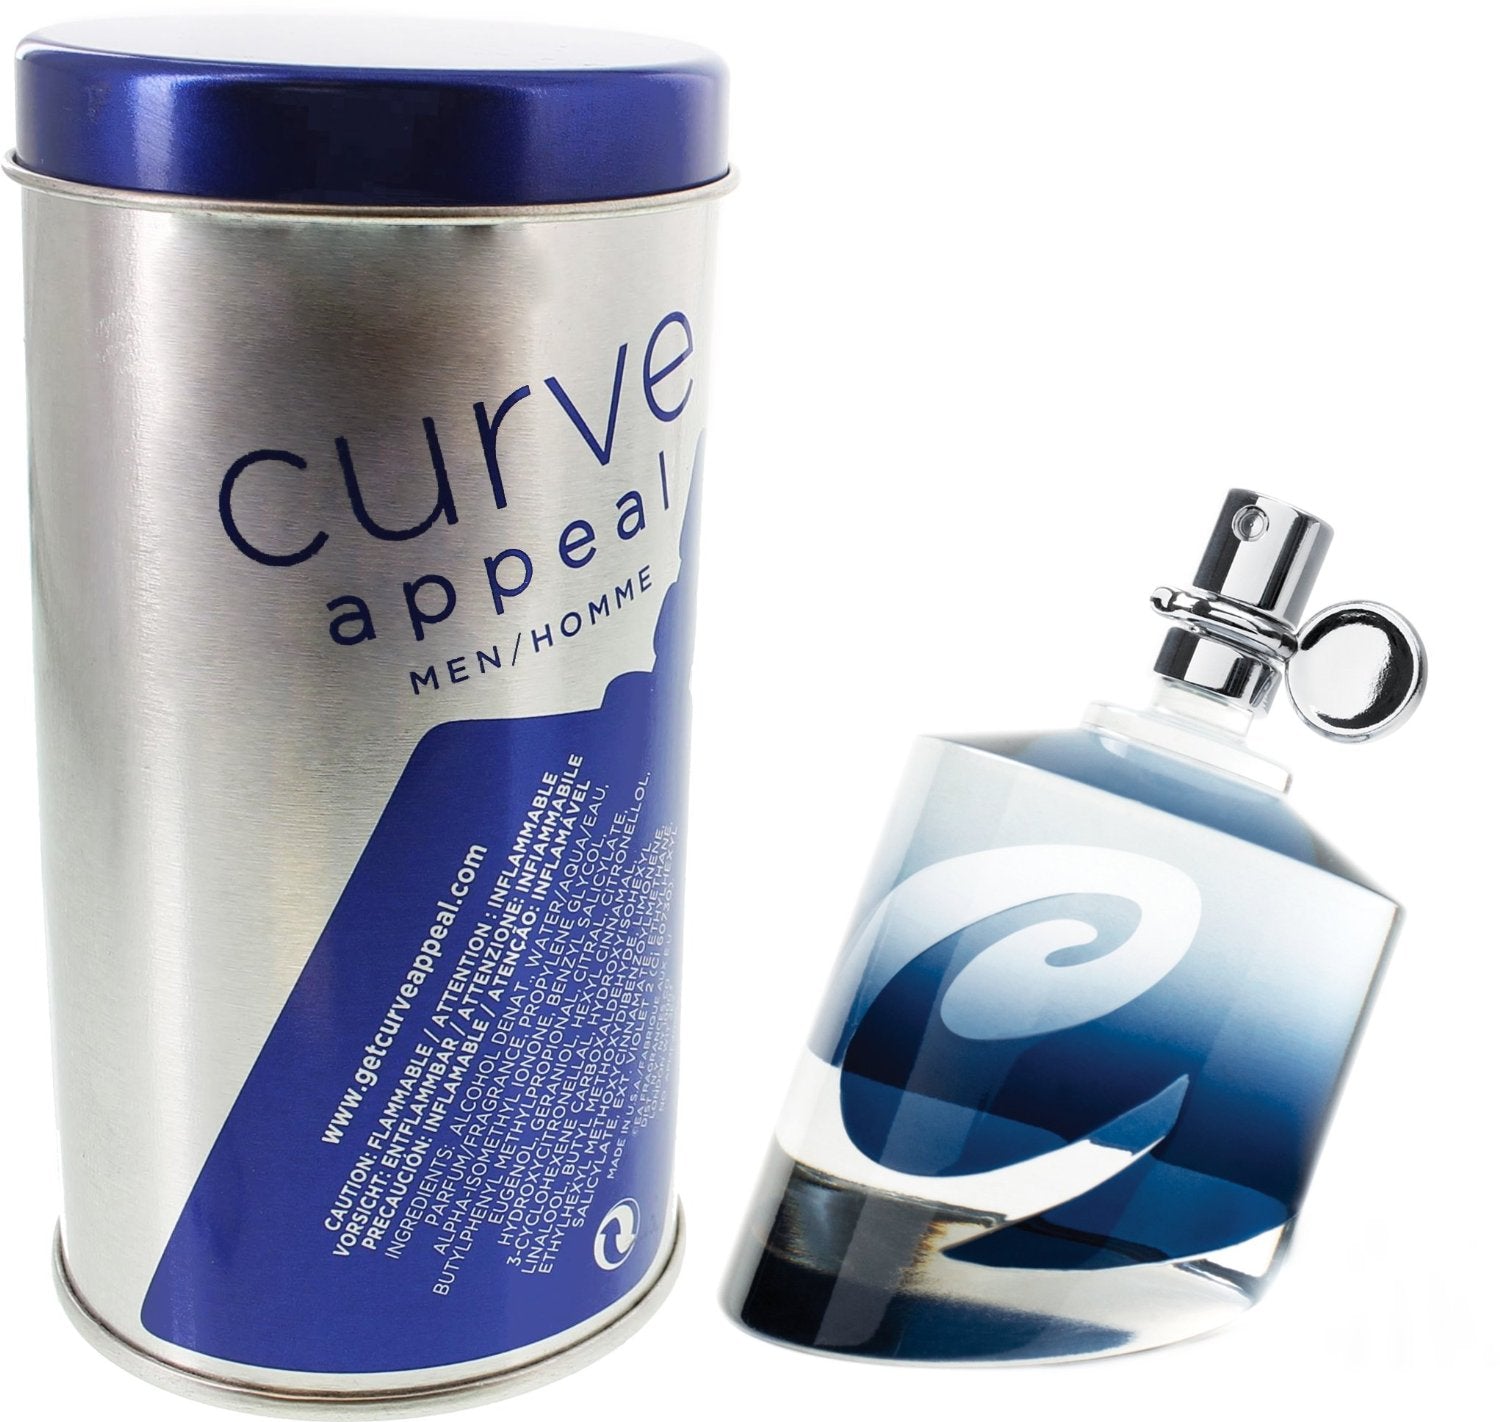 LIZ CLAIBORNE - Curve Appeal para hombre / 75 ml Eau De Toilette Spray